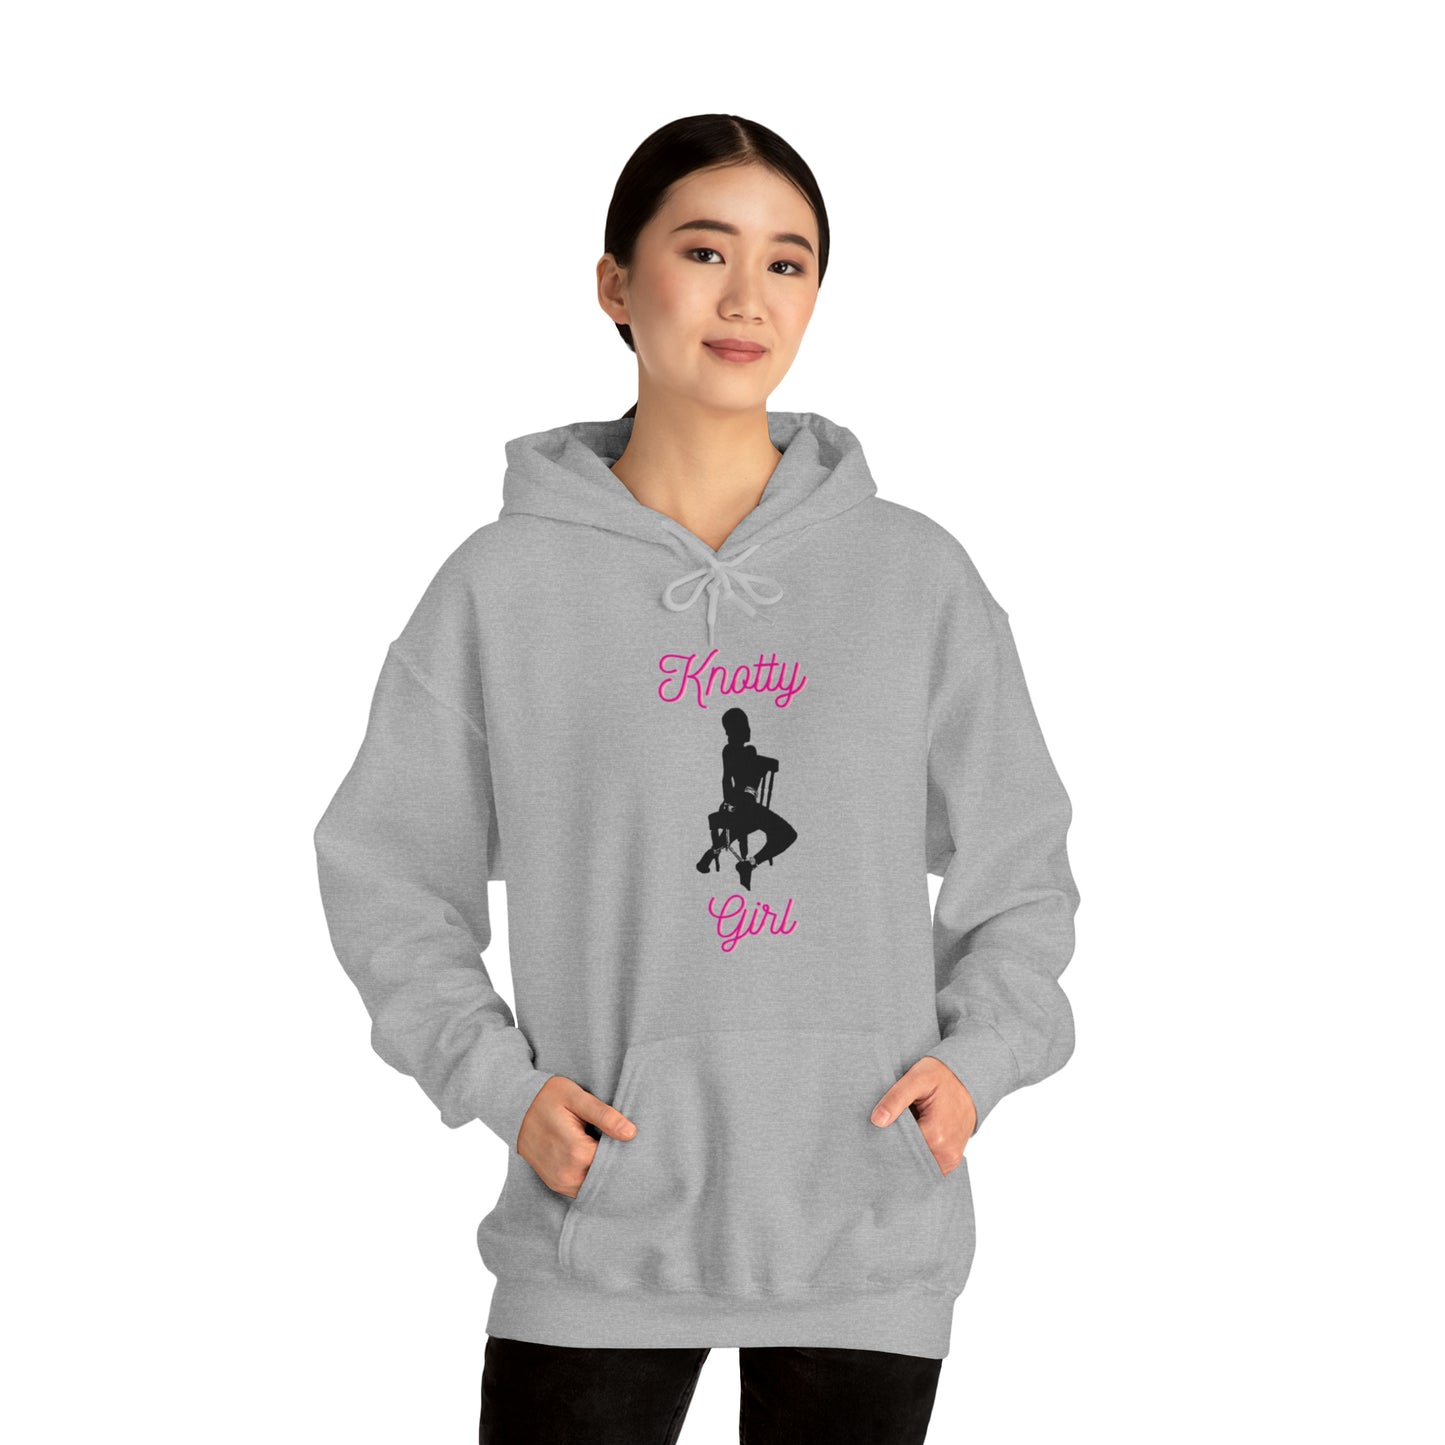 Knotty Girl Unisex Hooded Sweatshirt